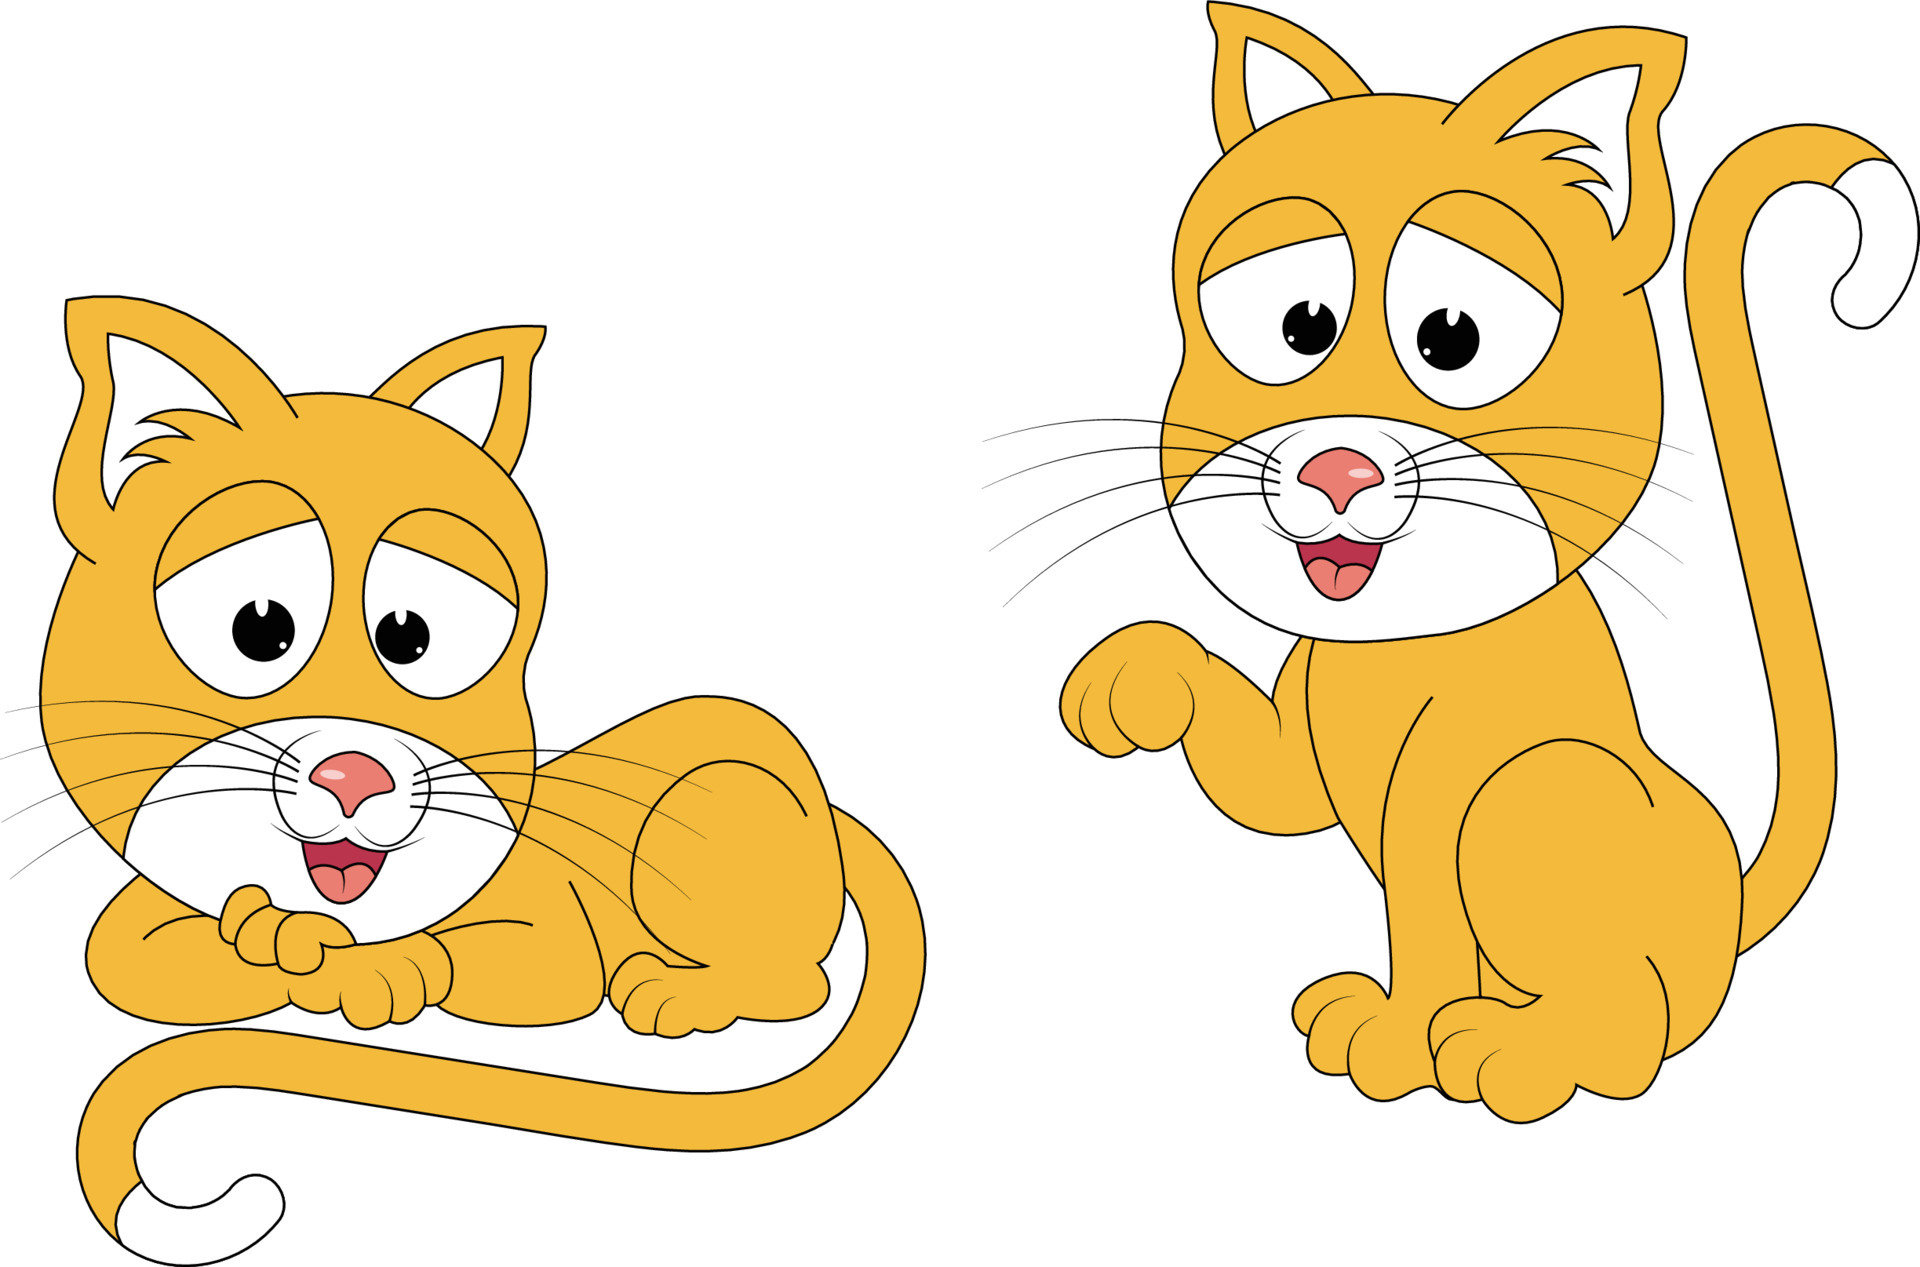 cute cute cat animal cartoon vector graphicanimal cartoon vector graphic  5196036 Vector Art at Vecteezy